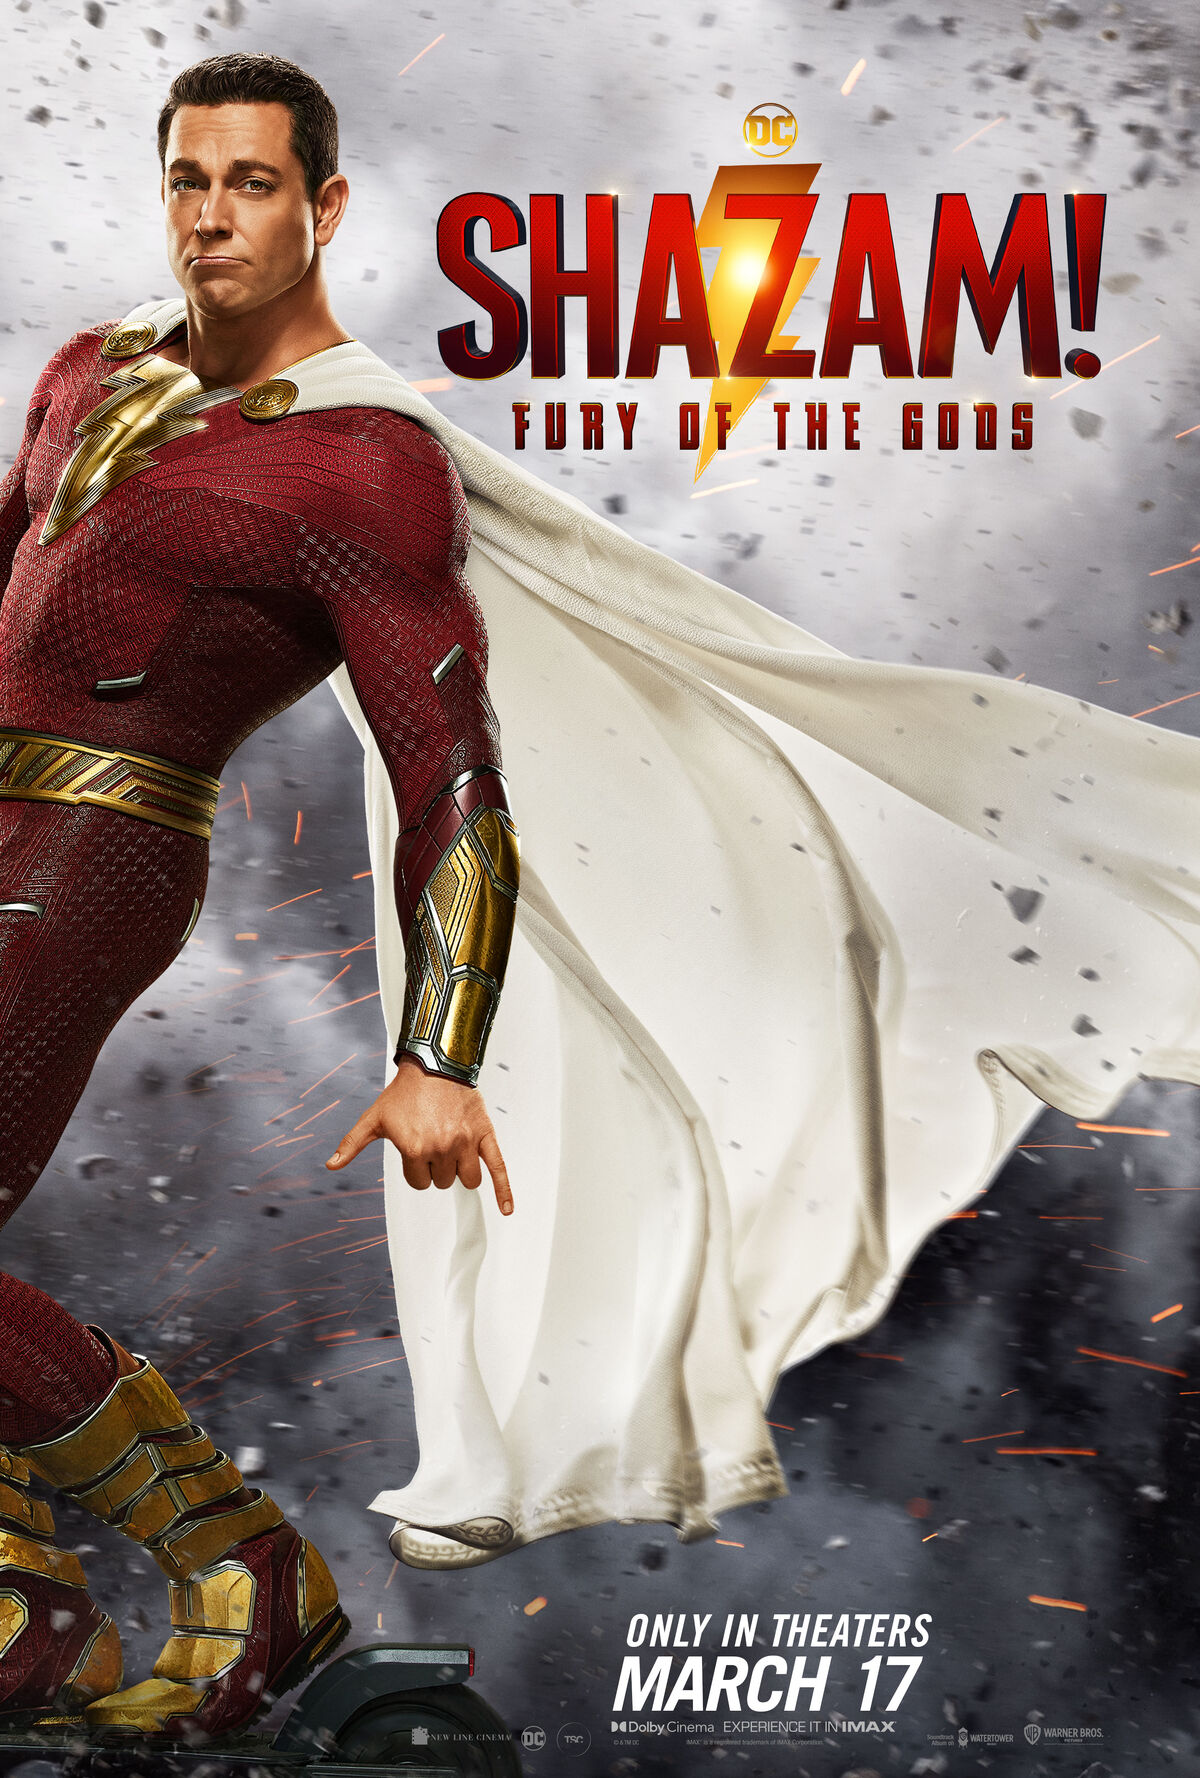 Shazam Fury of the Gods, Movie Timeline Details - Dafunda.com